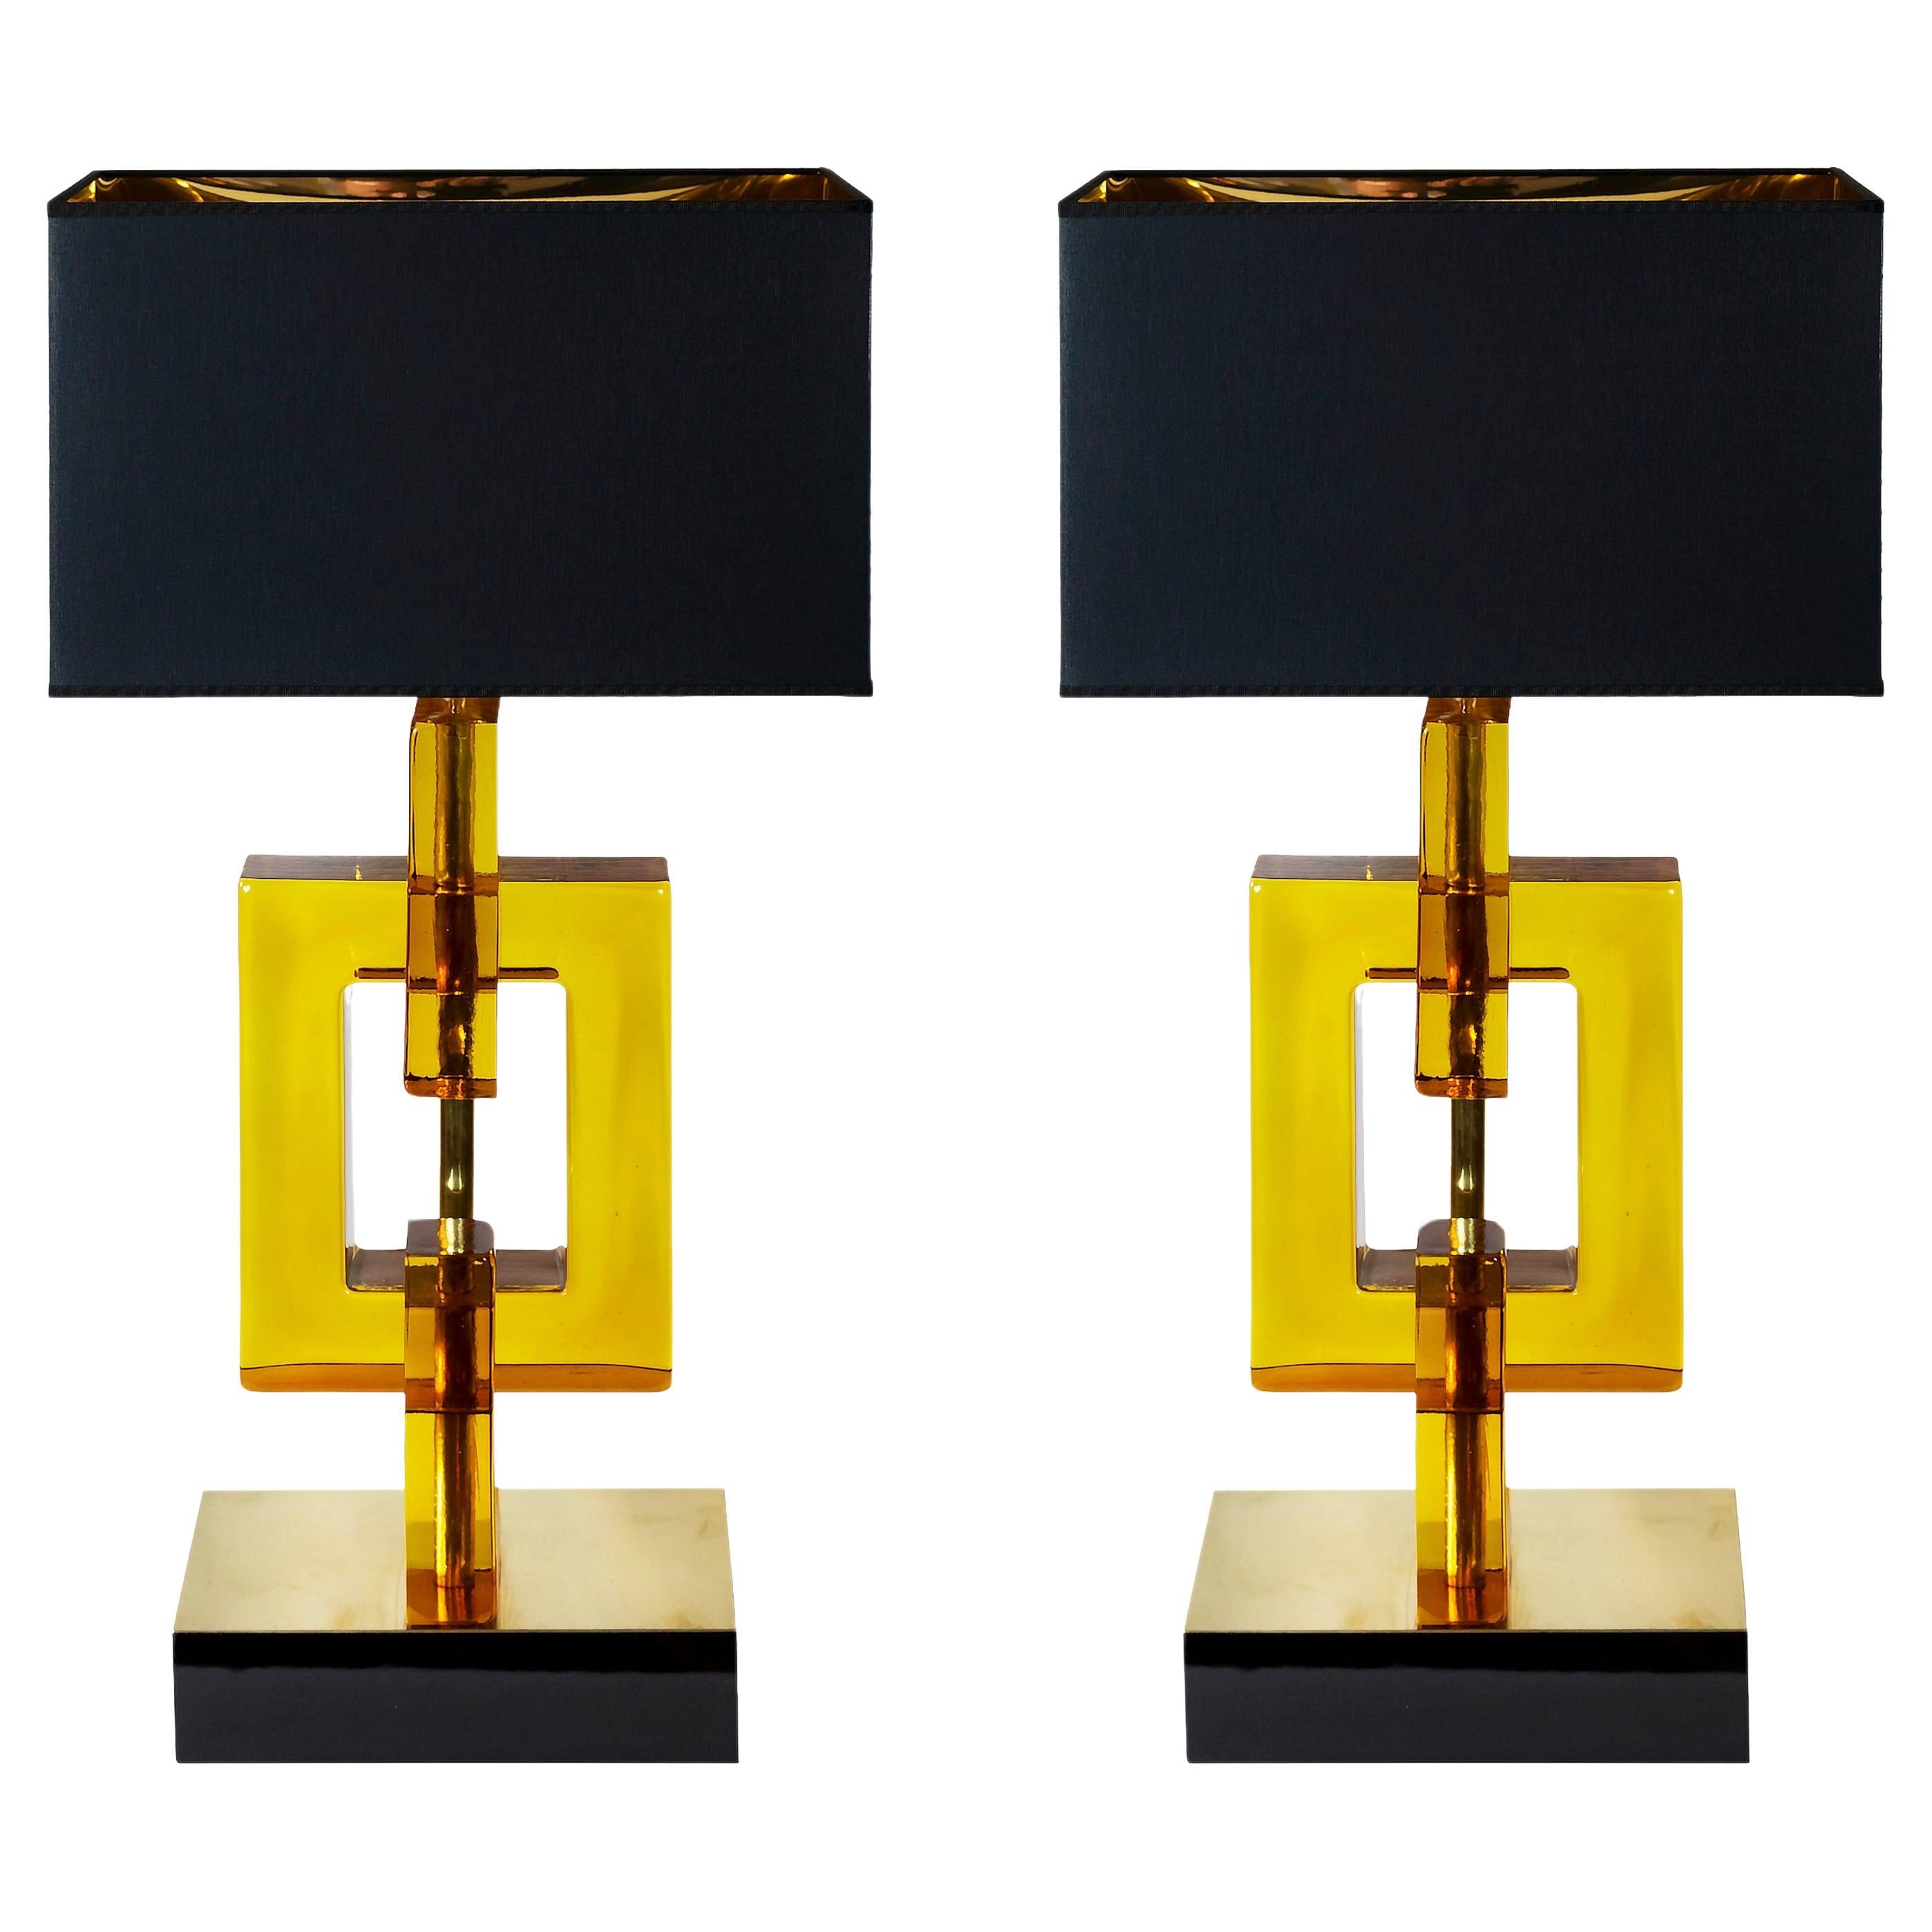 Paire de grandes lampes de table italiennes de style Art Déco.
La base est en contreplaqué épais peint en noir brillant et décoré d'une feuille de laiton poli sur le dessus. La partie en verre est faite à la main en verre ambré de Murano.
Les deux